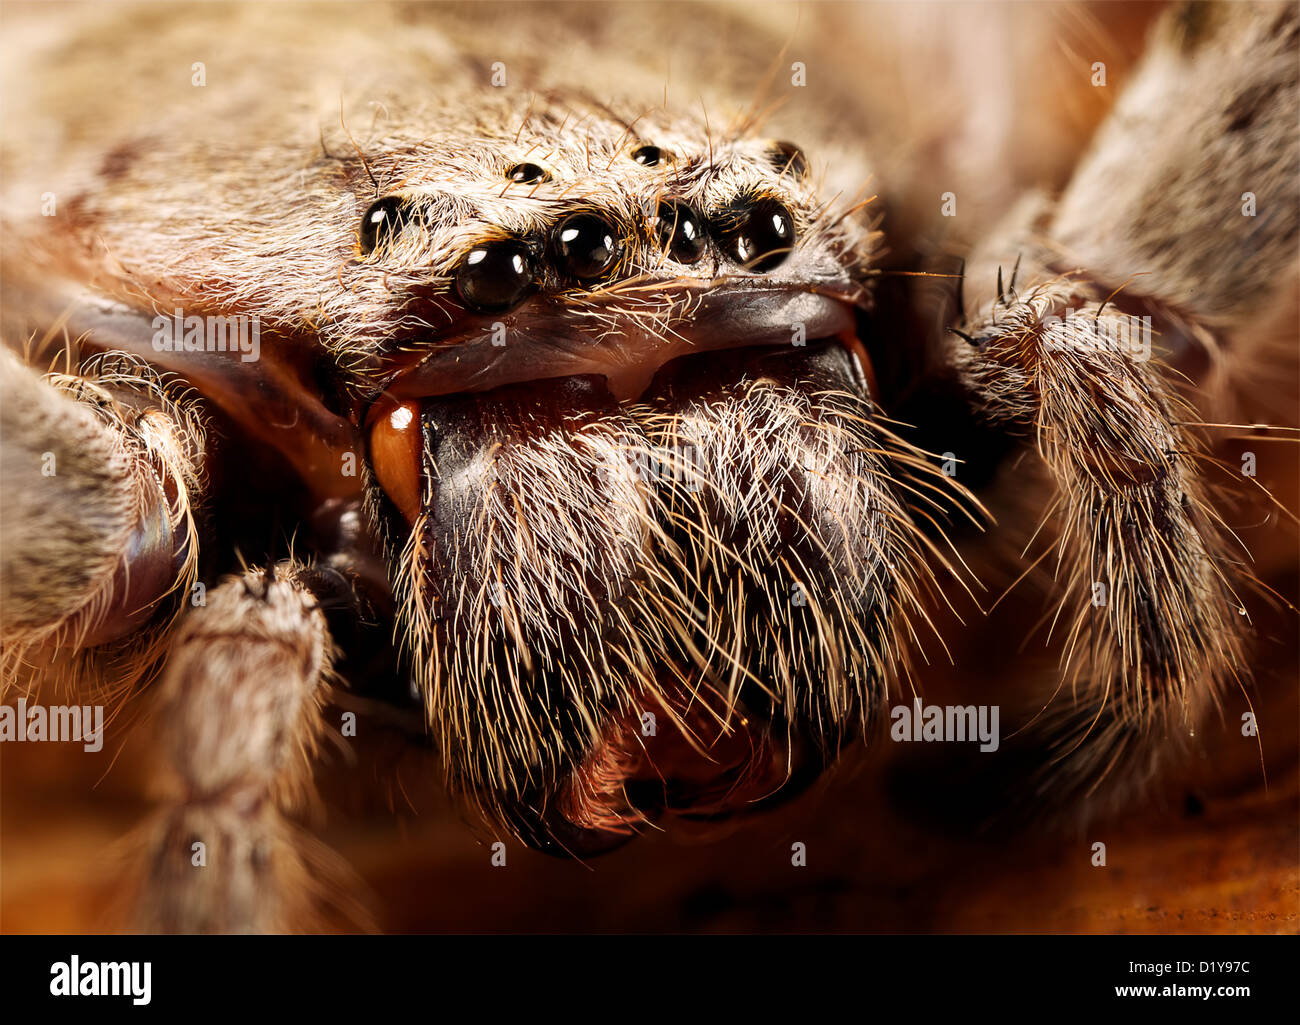 eine Nahaufnahme von Huntsman Spinne, zeigt alle acht Augen Stockfotografie  - Alamy